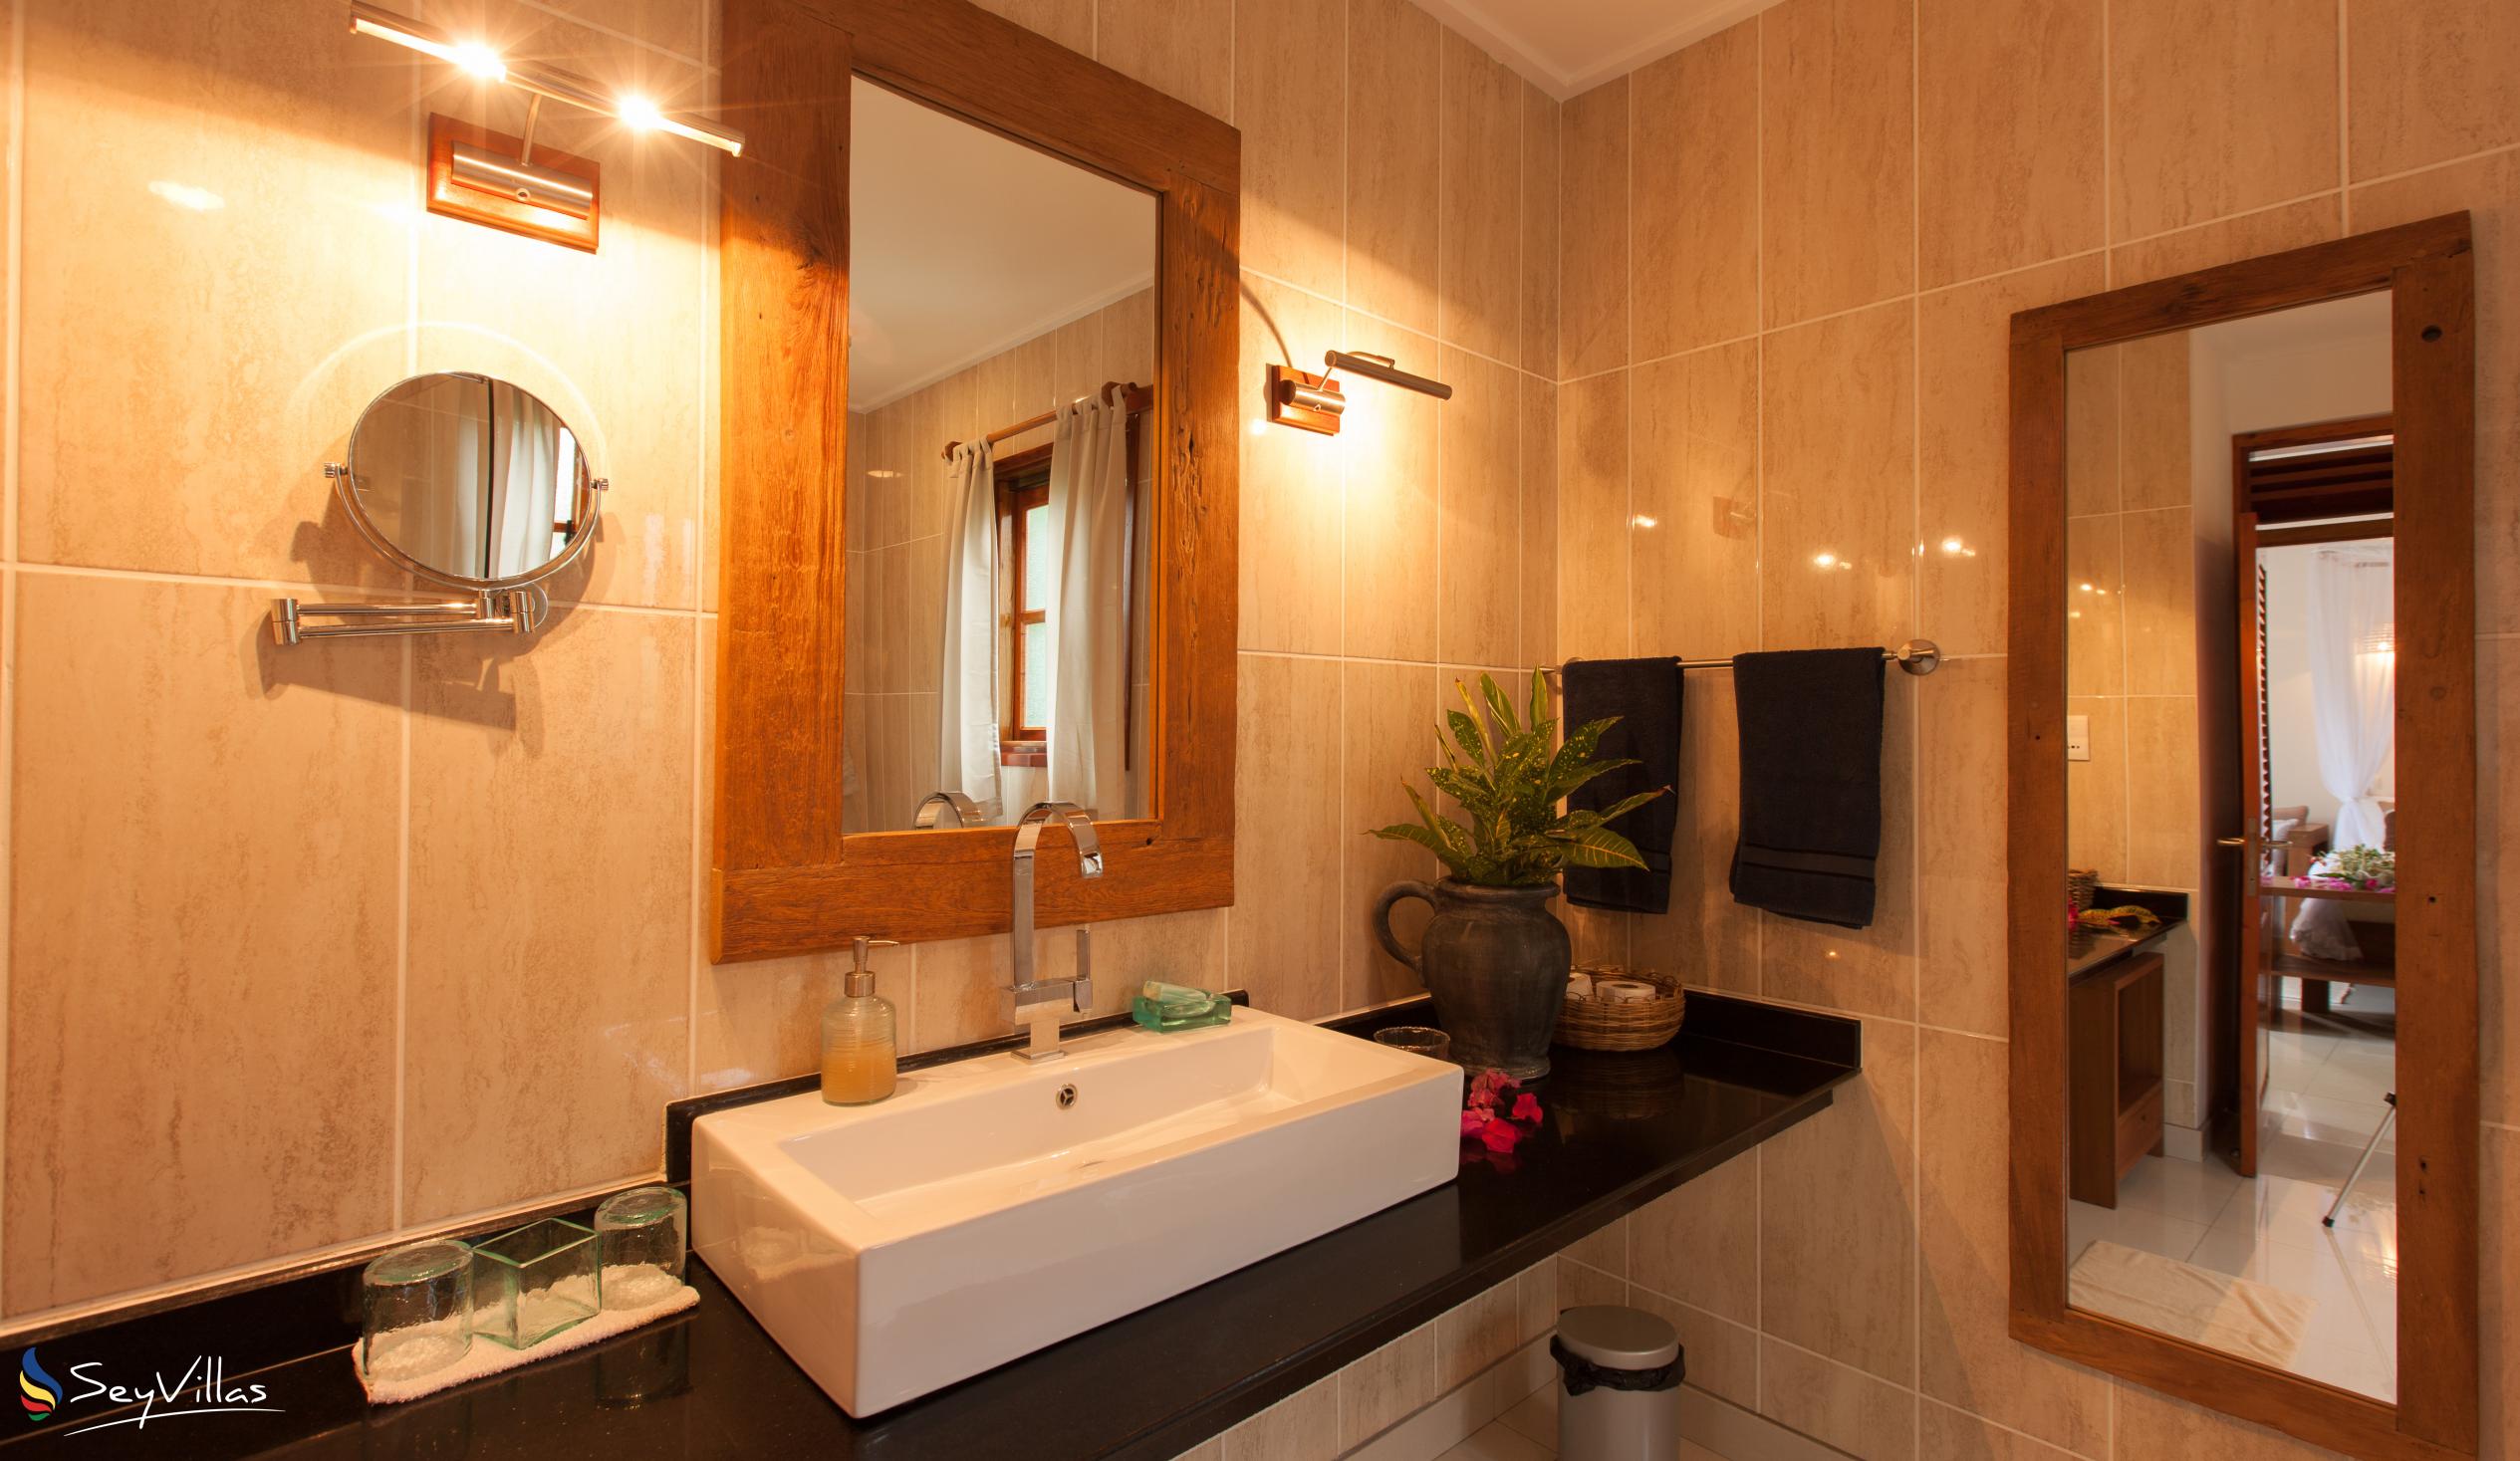 Photo 58: Domaine Les Rochers - First-Floor Luxury Apartment Kaz Rochers - La Digue (Seychelles)